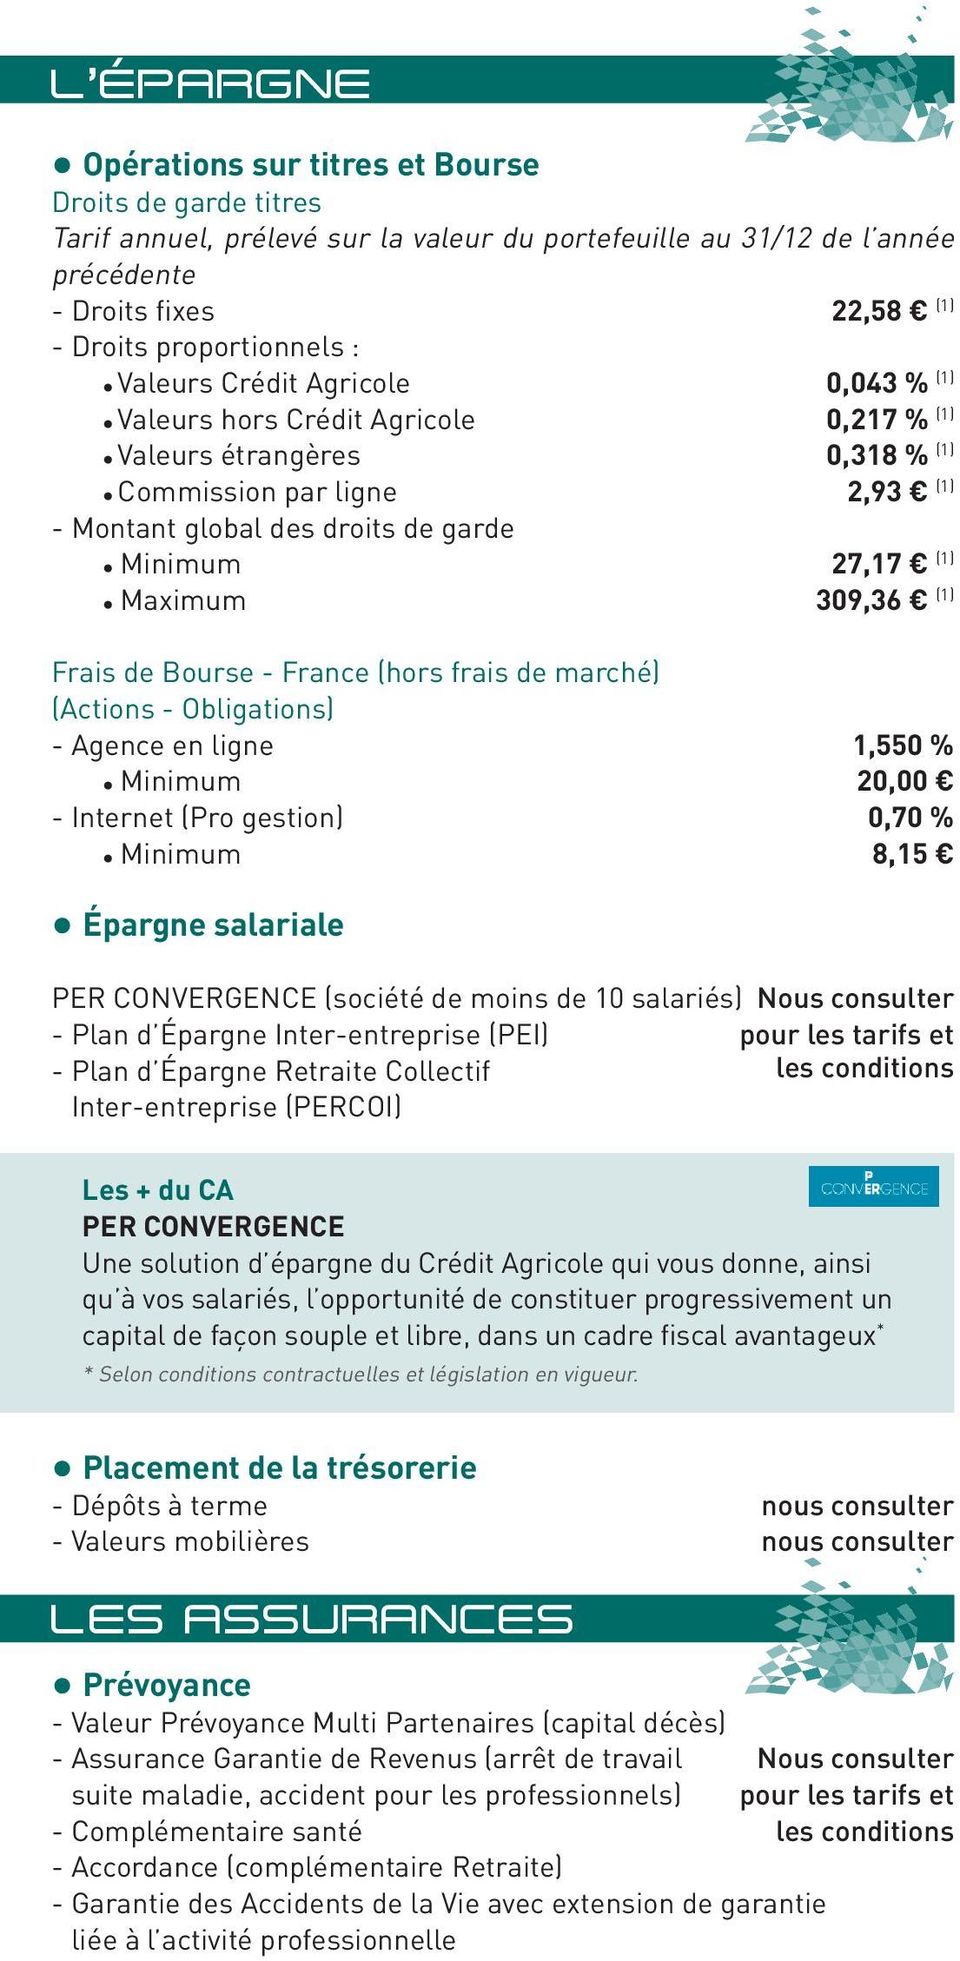 Maximum 309,36 (1) Frais de Bourse - France (hors frais de marché) (Actions - Obligations) - Agence en ligne 1,550 % Minimum 20,00 - Internet (Pro gestion) 0,70 % Minimum 8,15 Épargne salariale PER